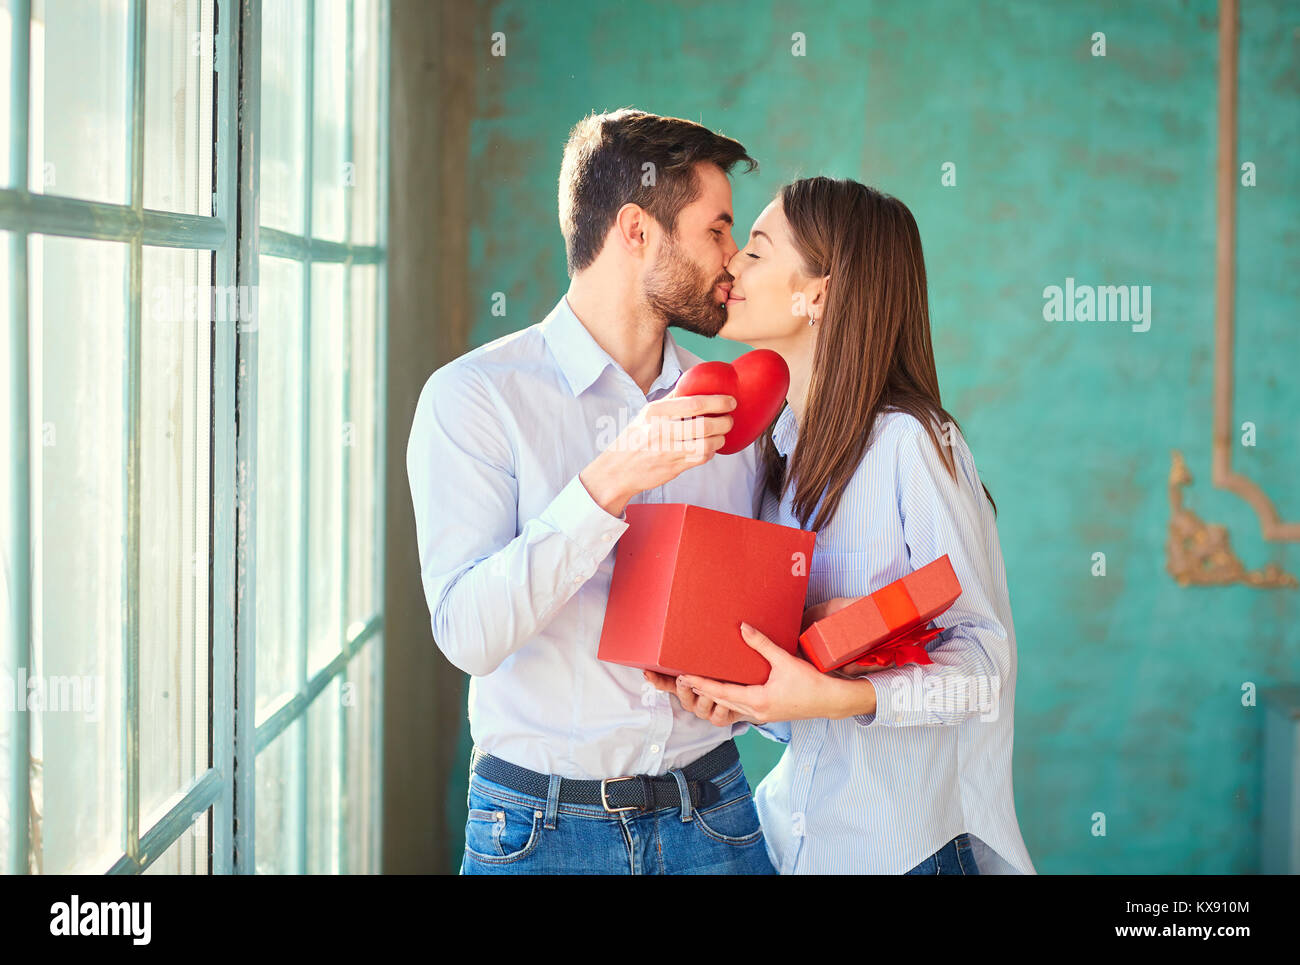 Der Kerl gibt ein Geschenk Box mit seiner Freundin. Stockfoto